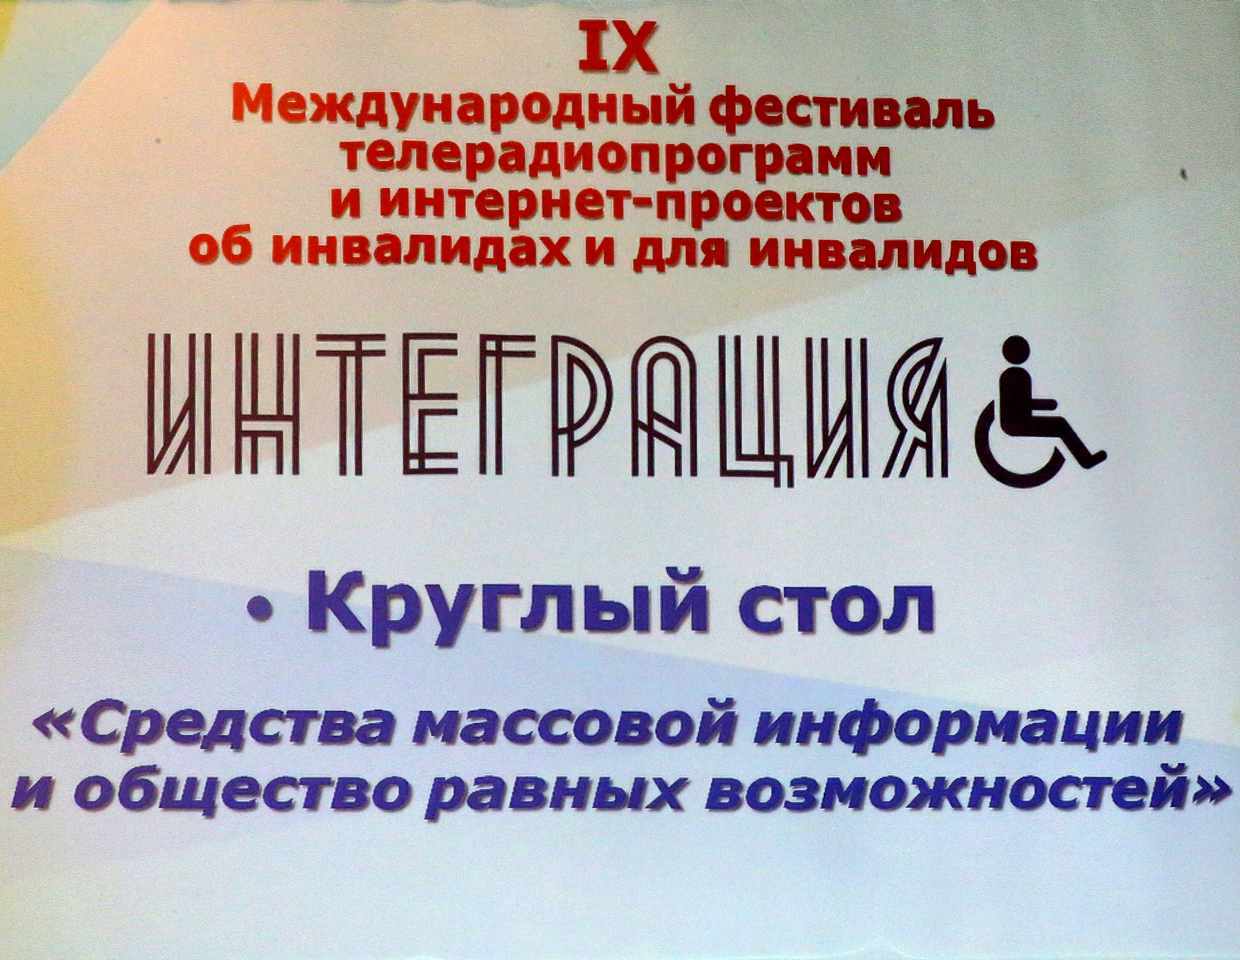 В Москве прошел IX Международный фестиваль телерадиопрограмм и интернет-проектов об инвалидах и для инвалидов «Интеграция»